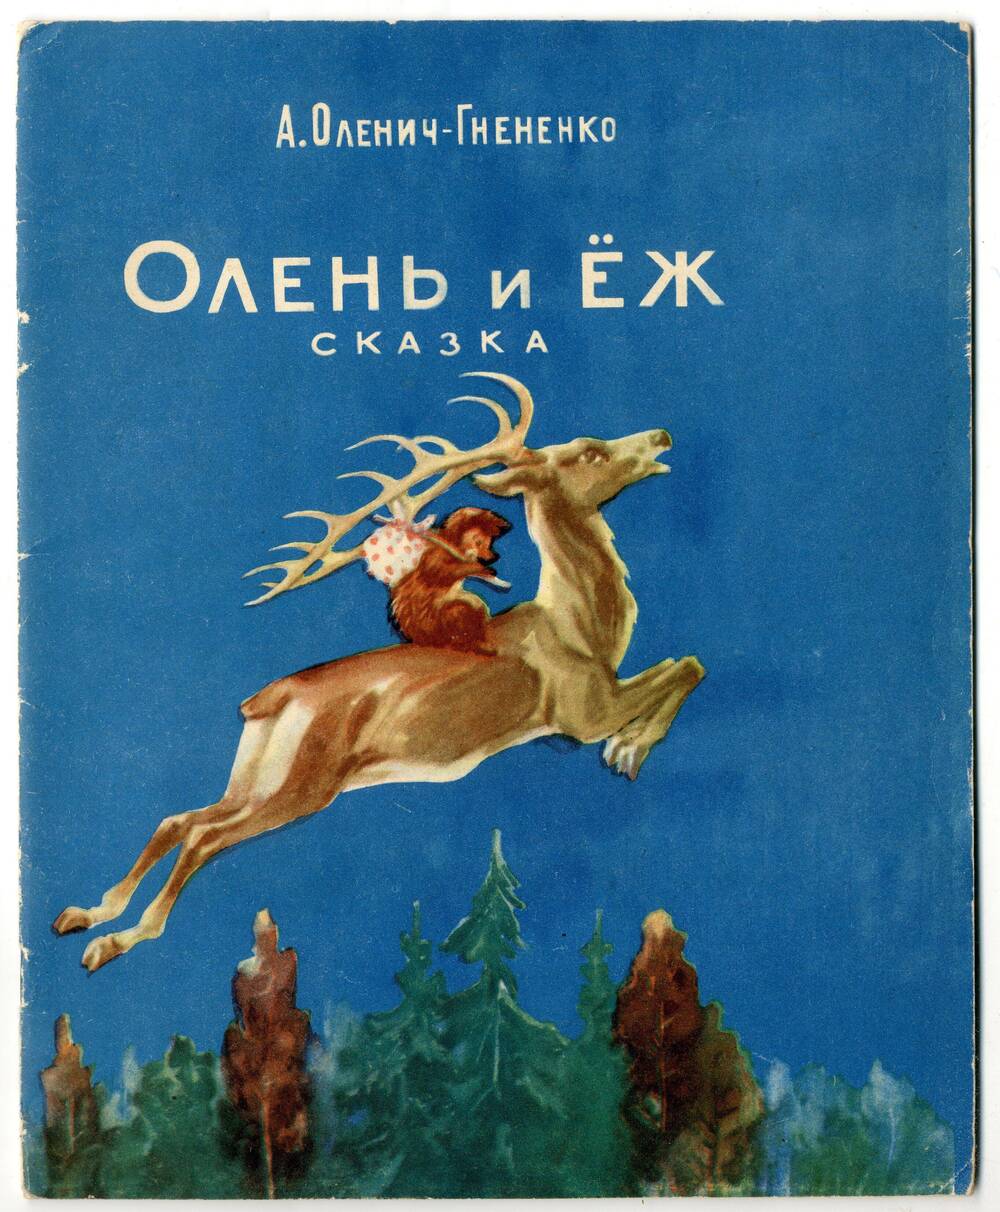 Книга: Оленич-Гнененко А.П. Олень и еж, Ростов-на-Дону, 1959.